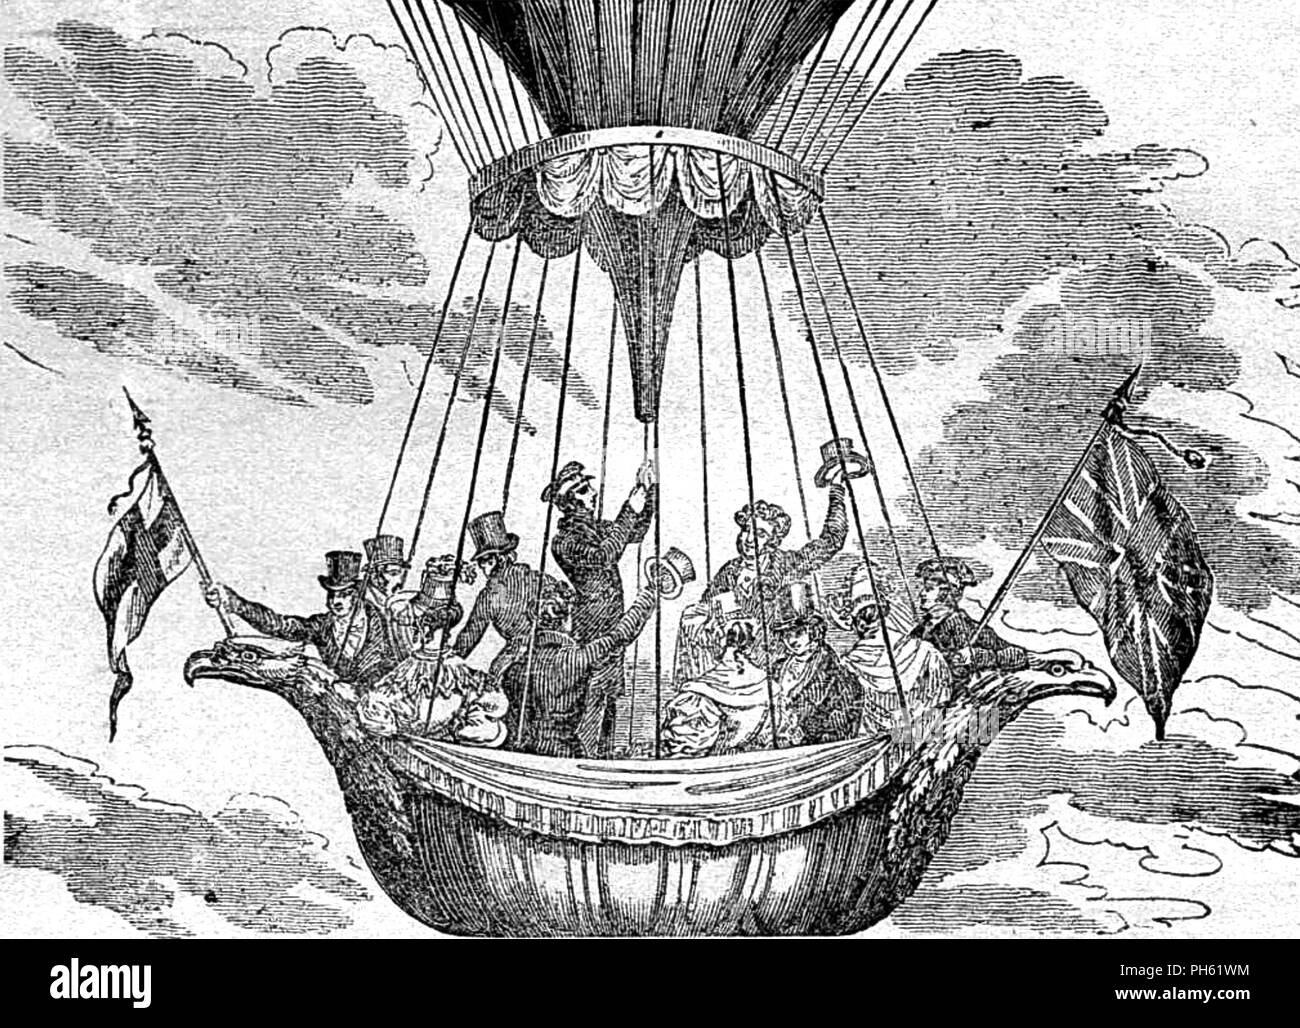 Ballon aufstieg von Vauxhall Gardens, London, 4. September 1837 mit dem Titel "einem doppelten Aufstieg' und zeigt eine aufwändige Gondel formell gekleideten Frauen und Männer ihre Fahrgäste. Stockfoto